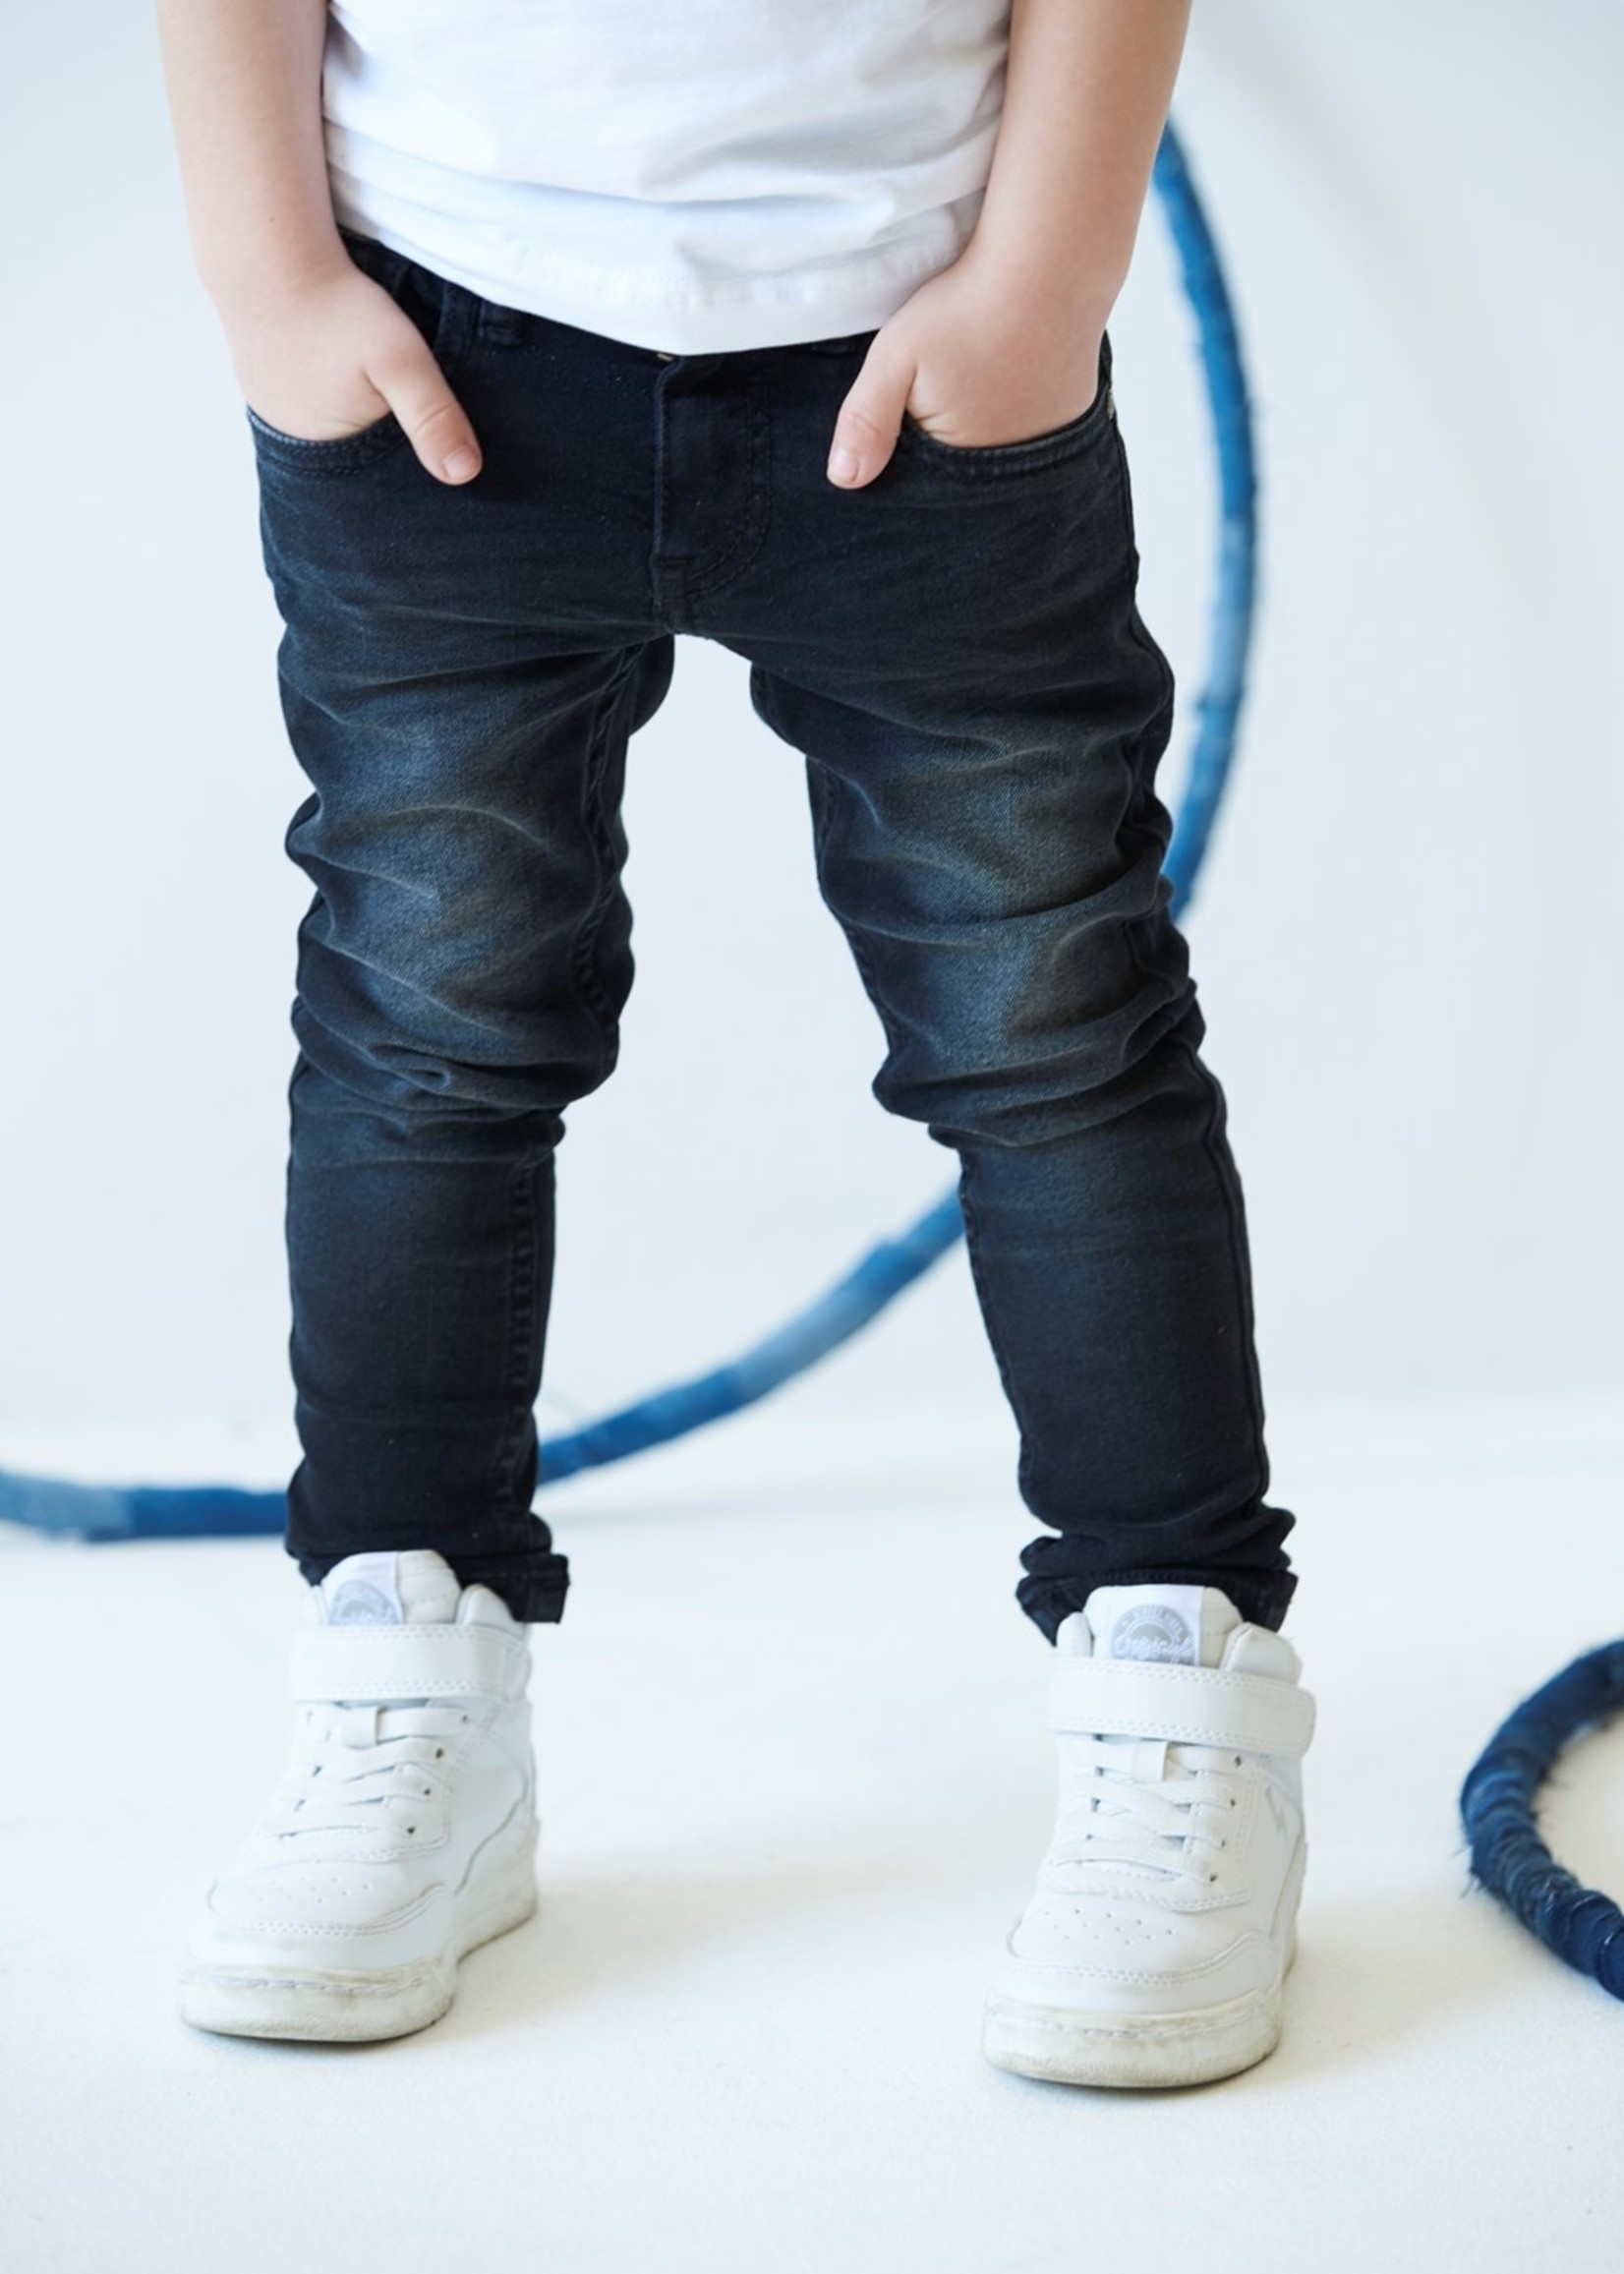 Sturdy Slim fit jeans - Sturdy Denim, Black Denim